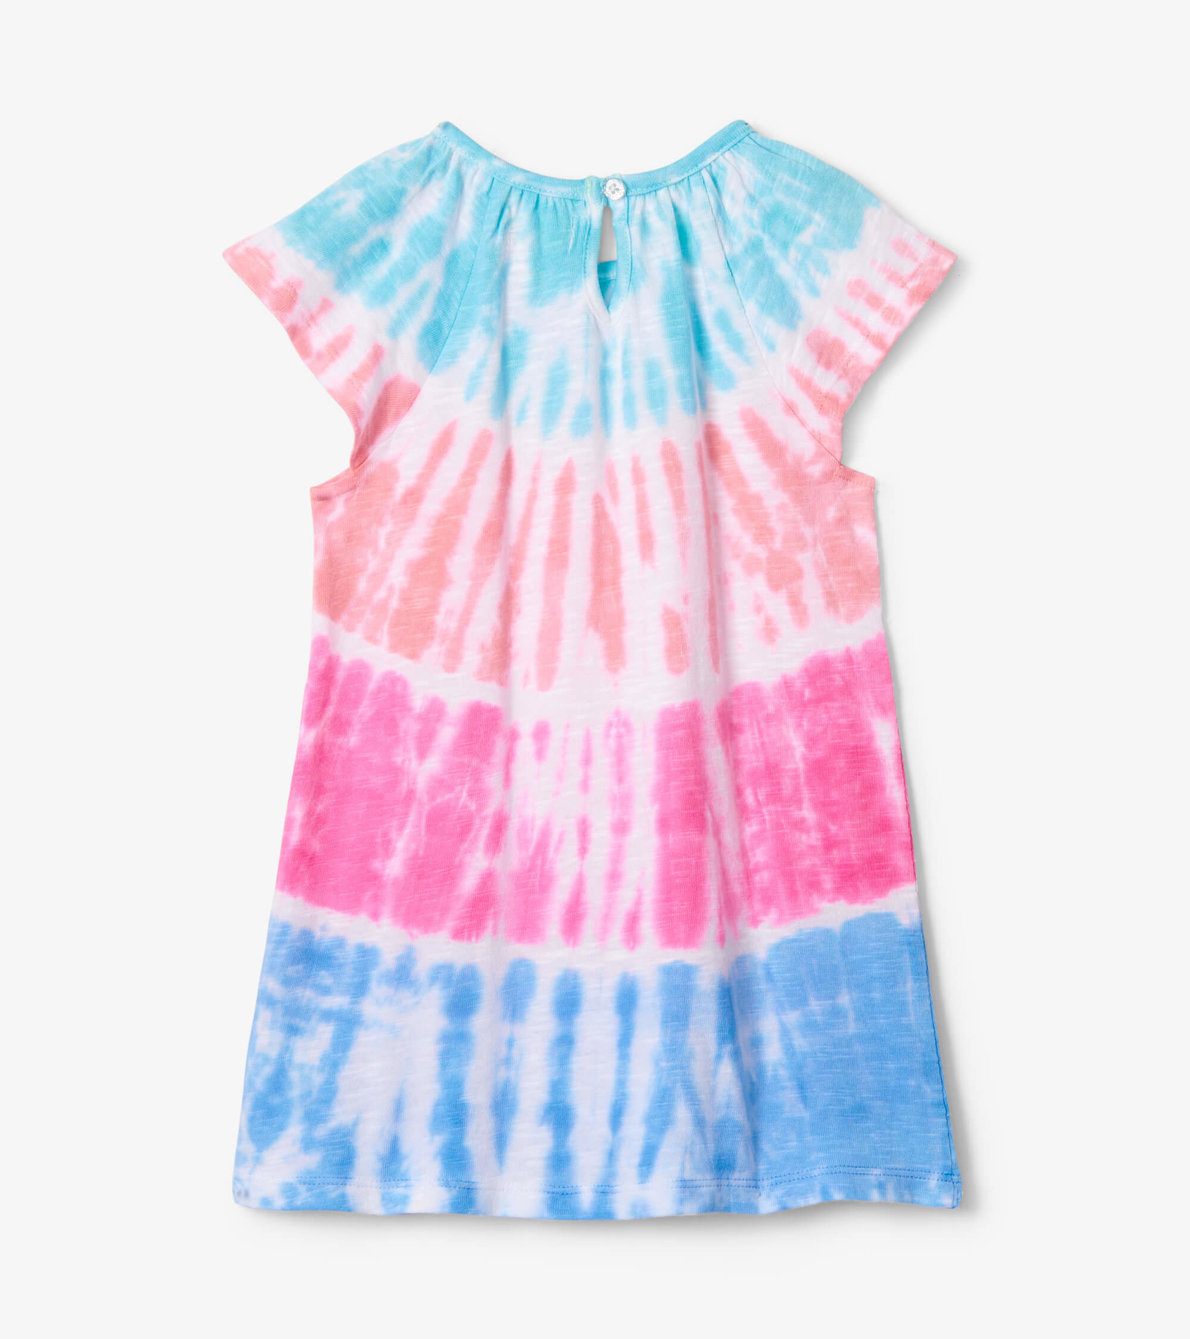 View larger image of Summer Tie Dye Toddler Easy Raglan Dress